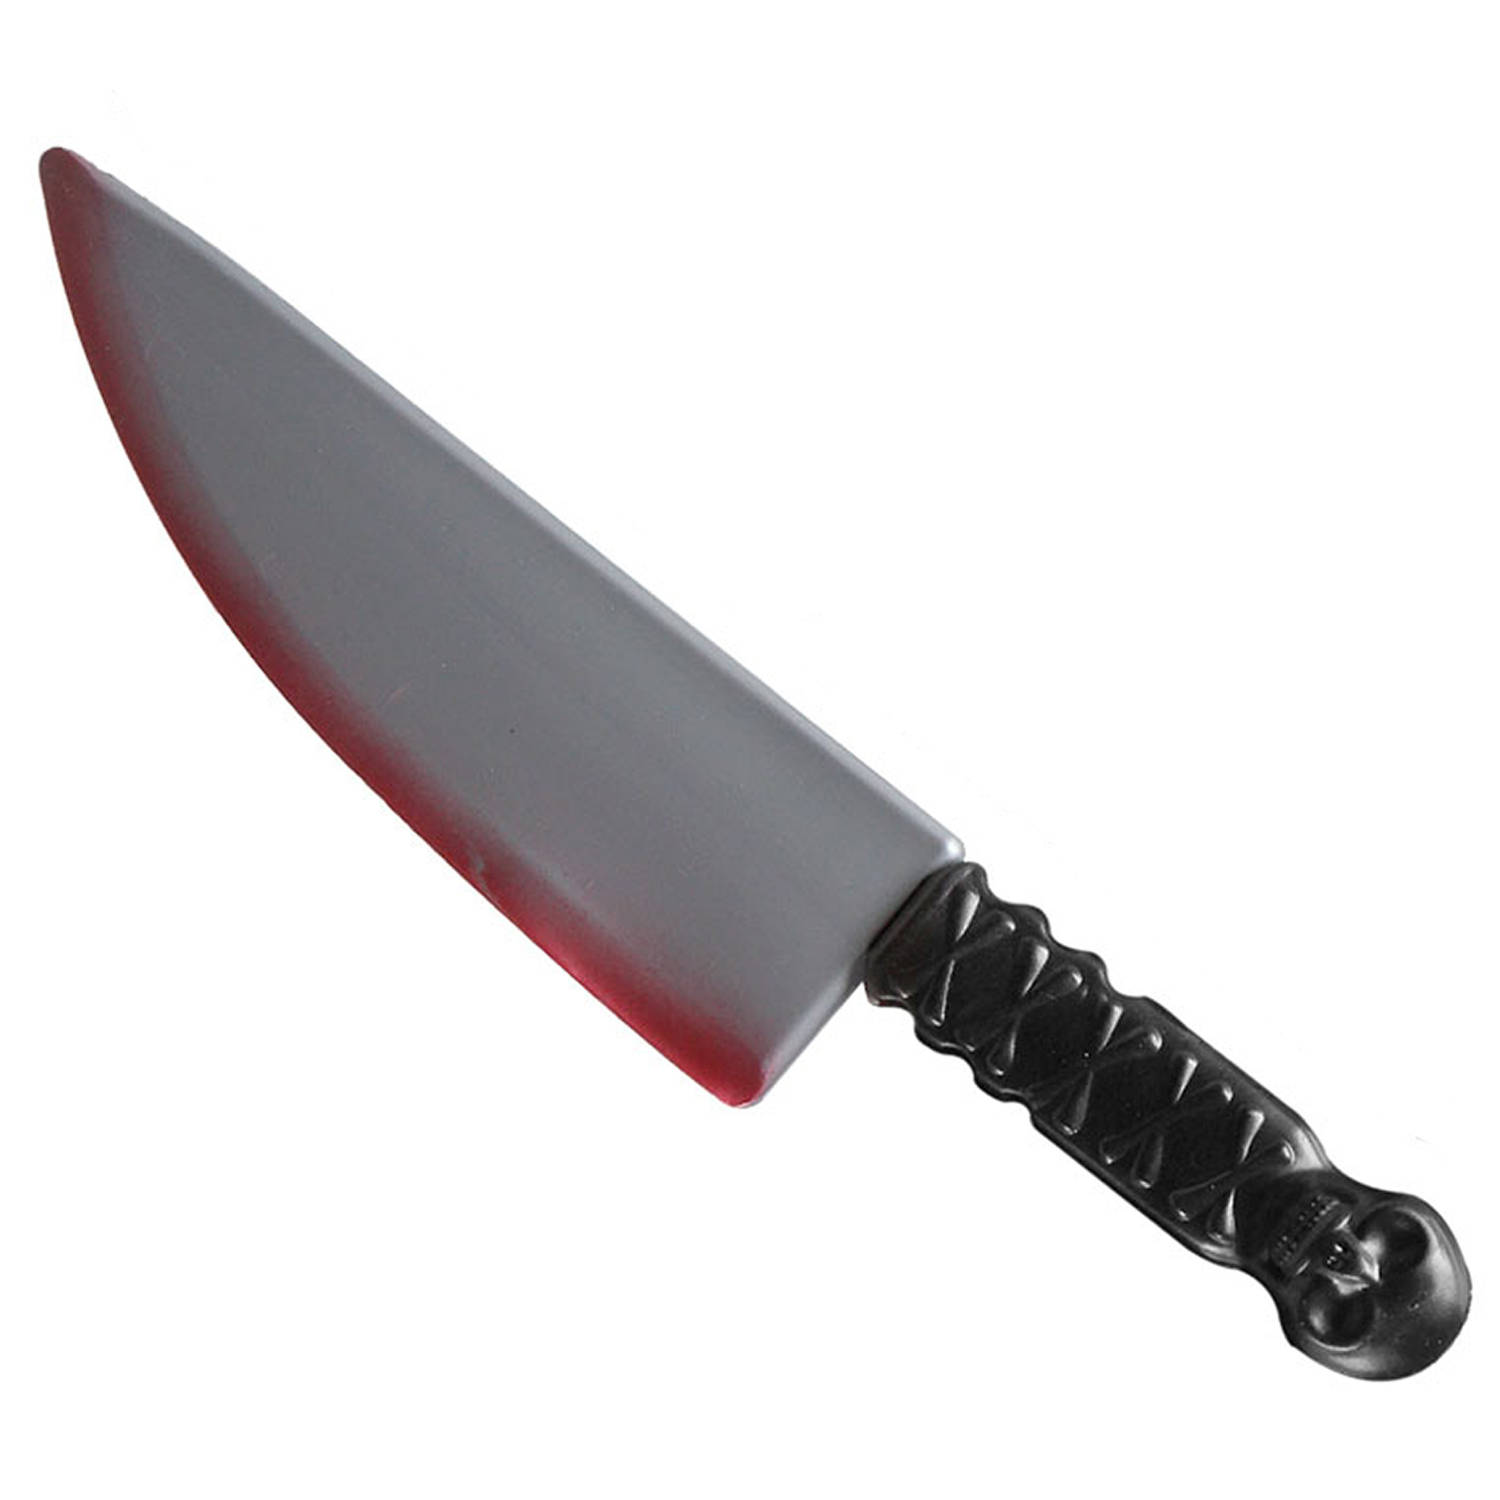 Groot killer mes - plastic - 41 cm - Halloween verkleed wapens - met vers bloed